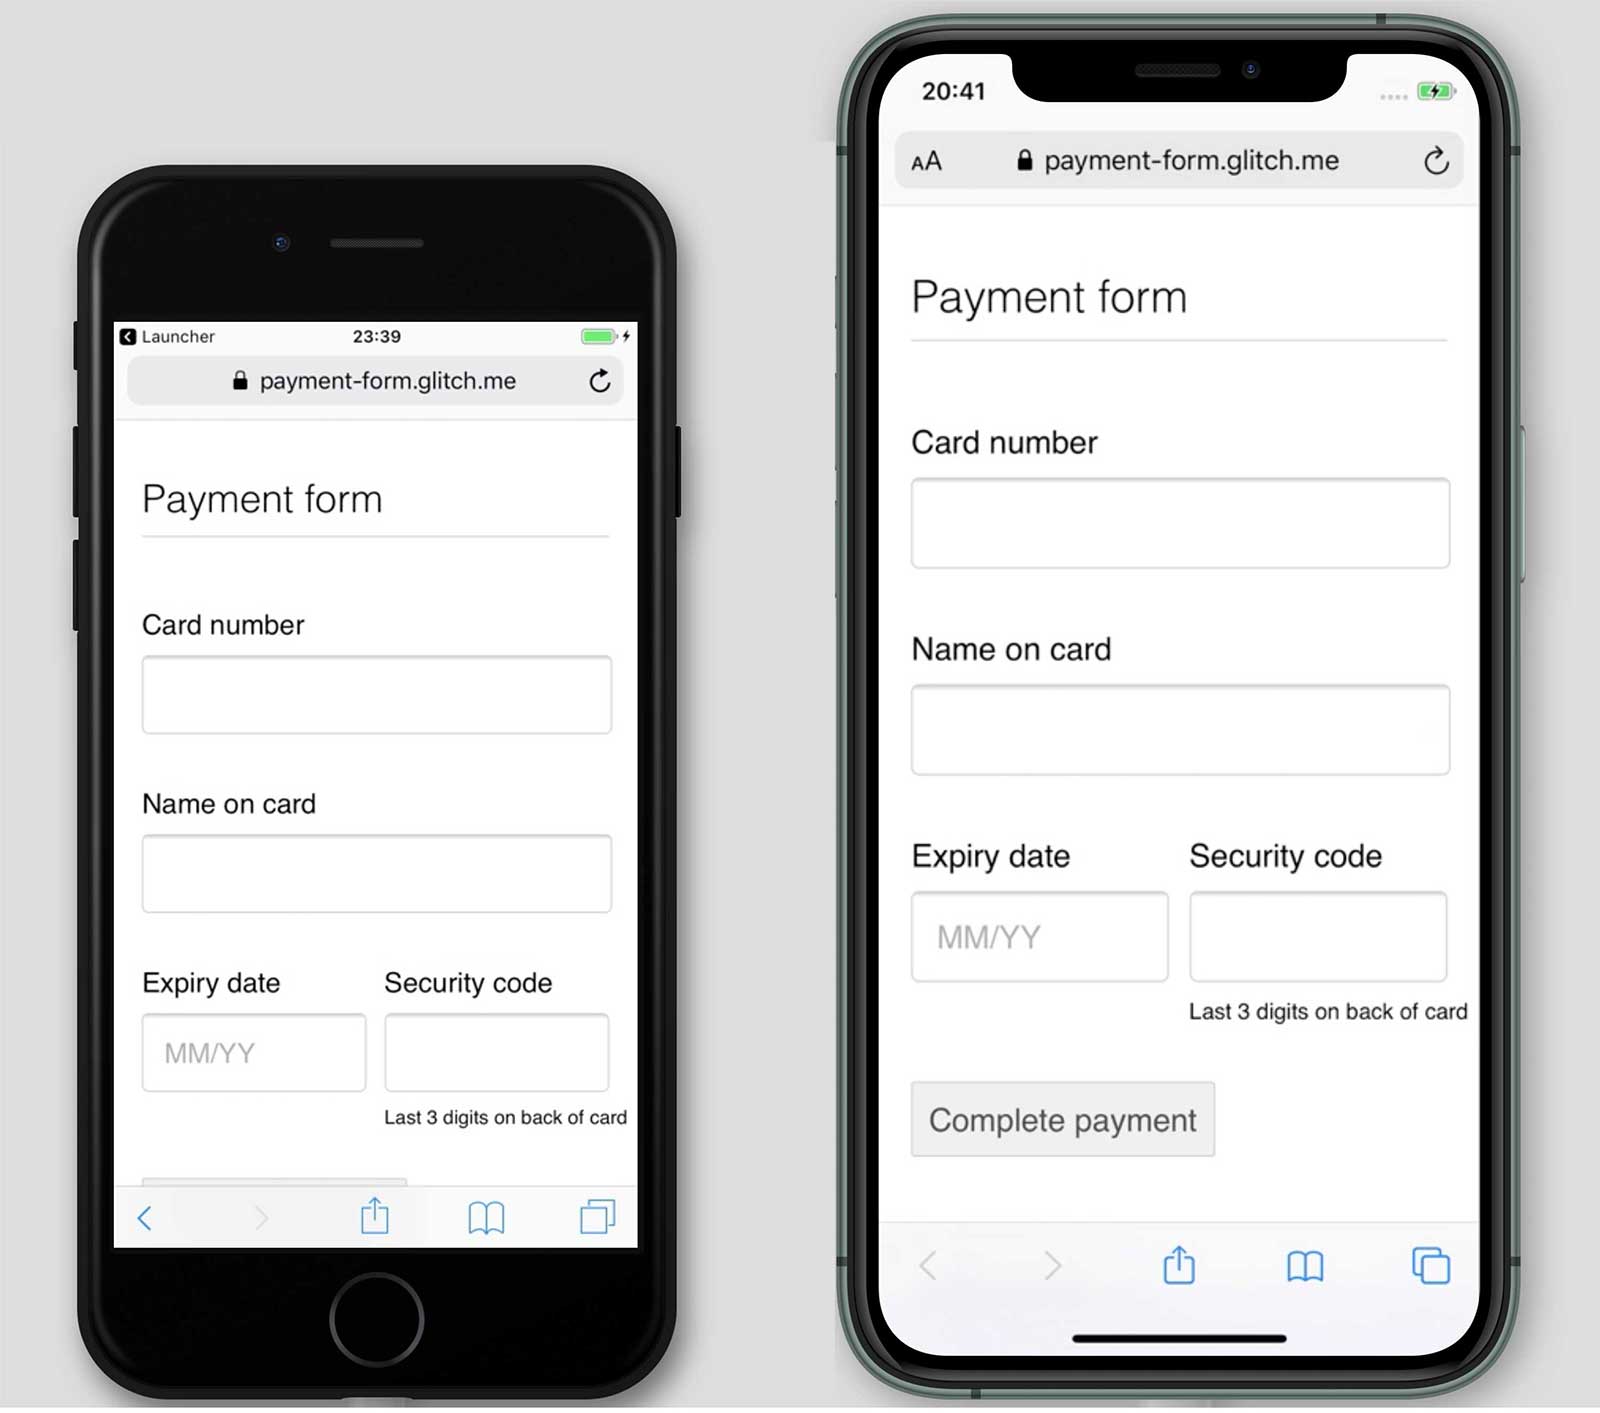 Capturas de tela de uma forma de pagamento, payment-form.glitch.me, no iPhone 7 e 11. O botão &quot;Concluir pagamento&quot; é mostrado no iPhone 11, mas não no 7